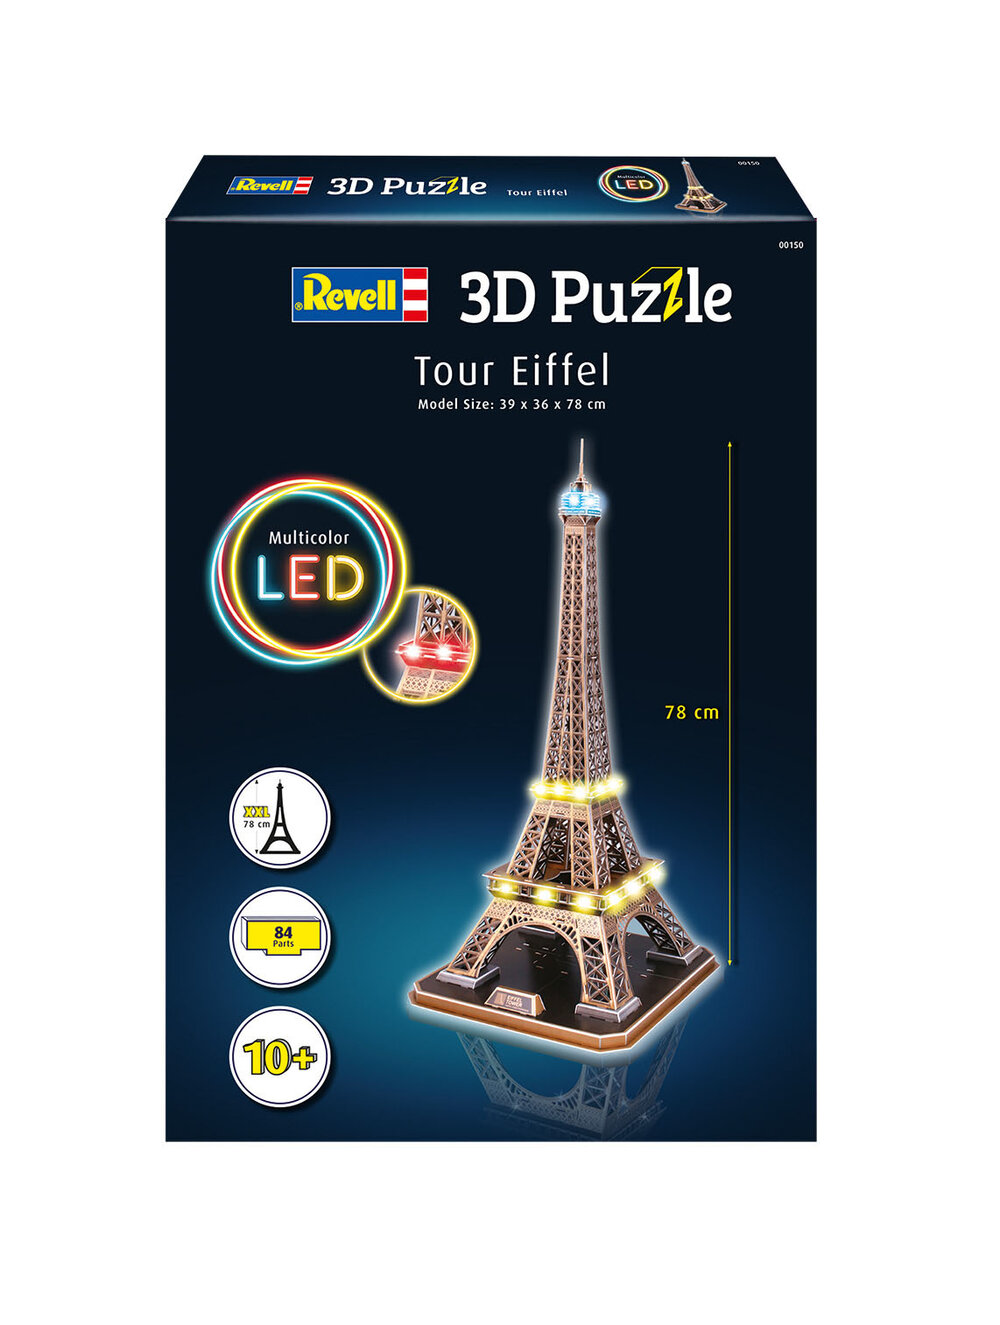 ensidigt Afspejling Ensomhed 3D Puzzle Tour Eiffel - LED Edition | Revell